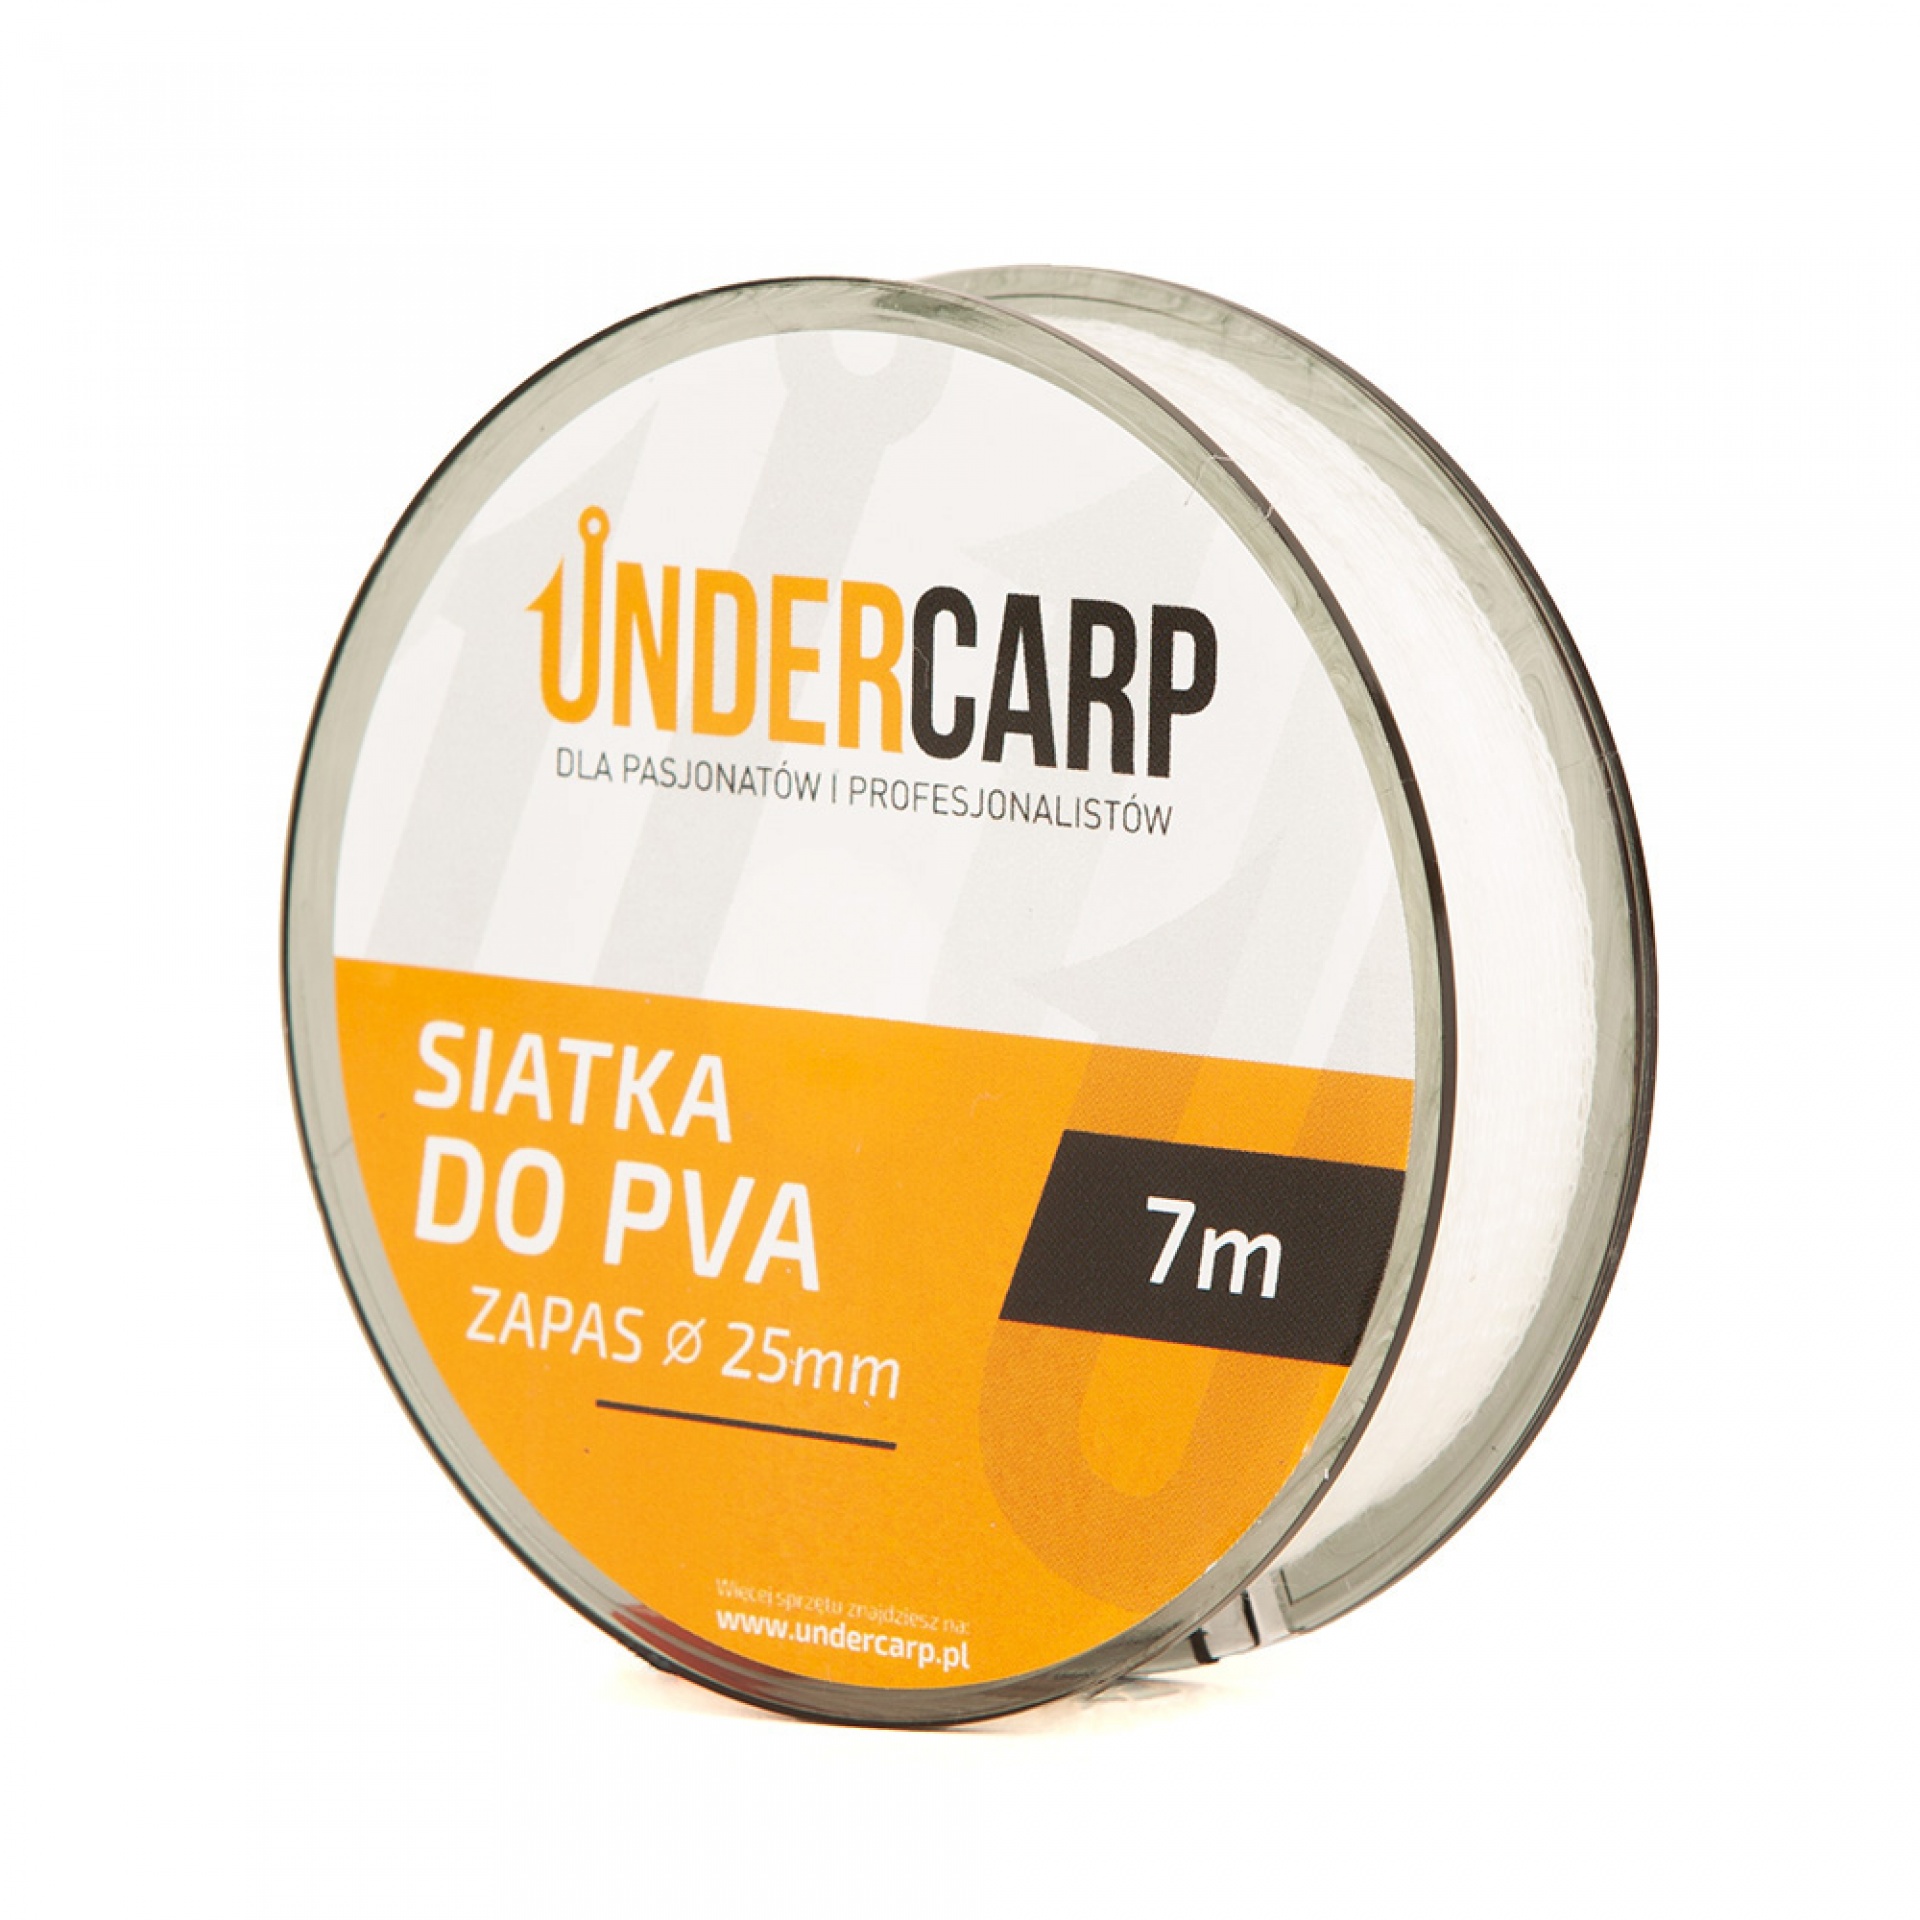 UnderCarp - Malla PVA de Recambio 25mm 7m